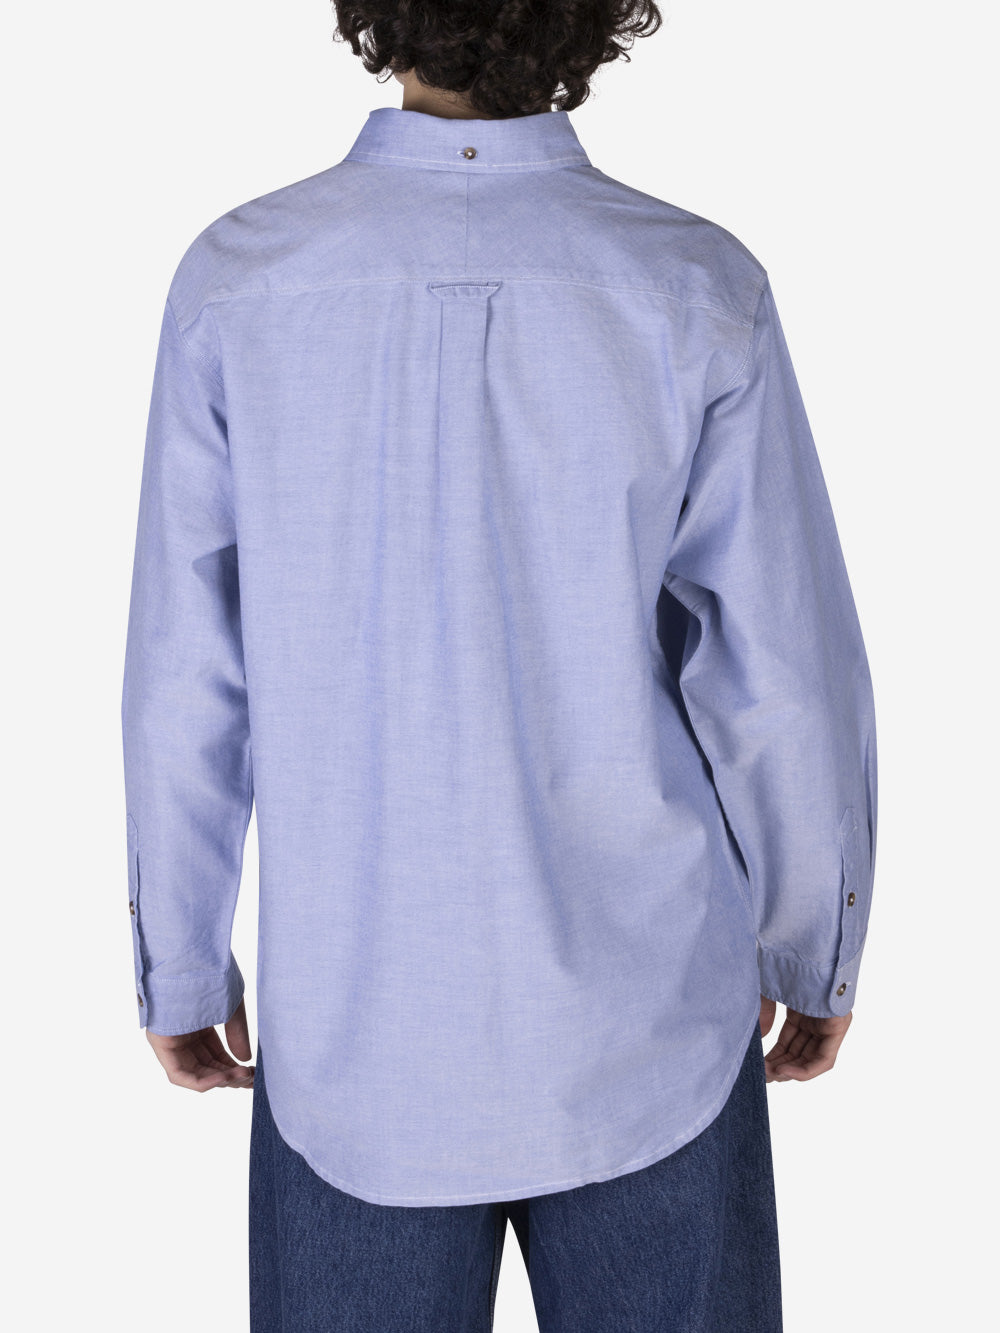 NIKE Camicia Oxford Button-Down in cotone Celeste Urbanstaroma